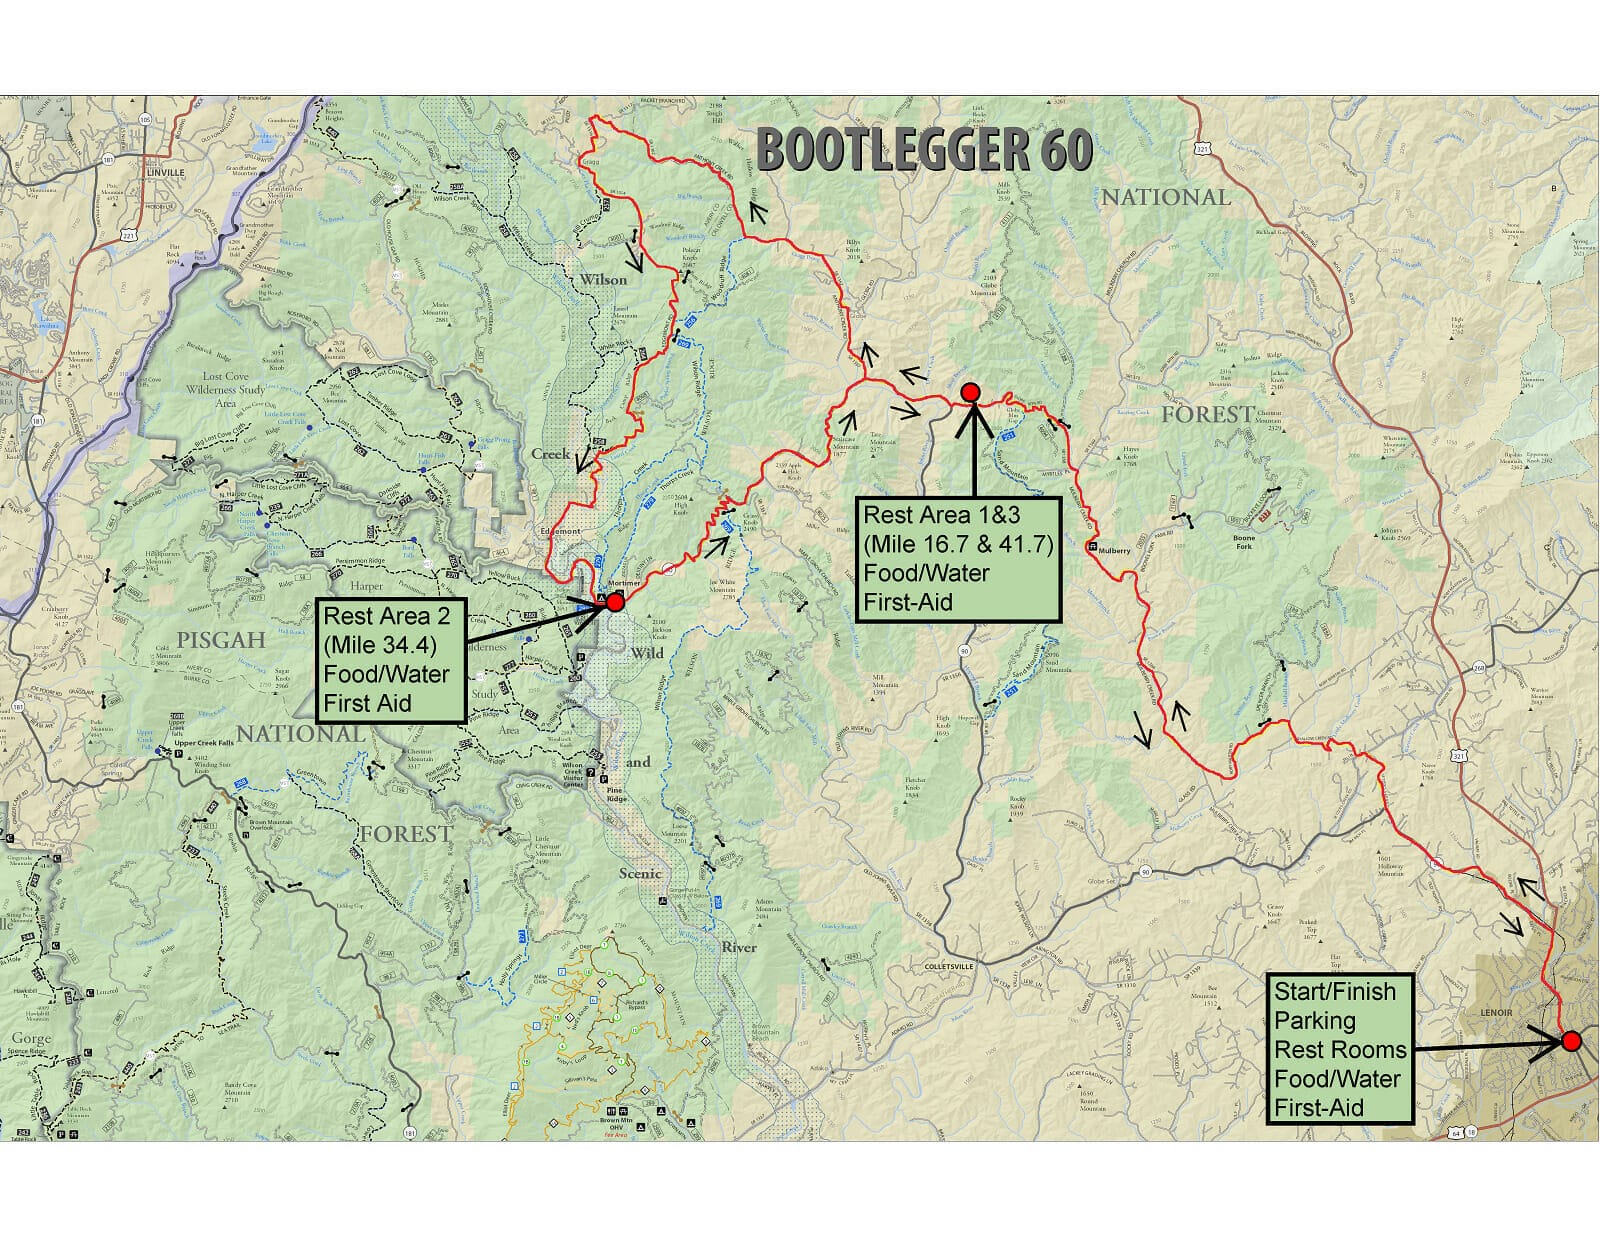 Bootlegger 60 mile course map